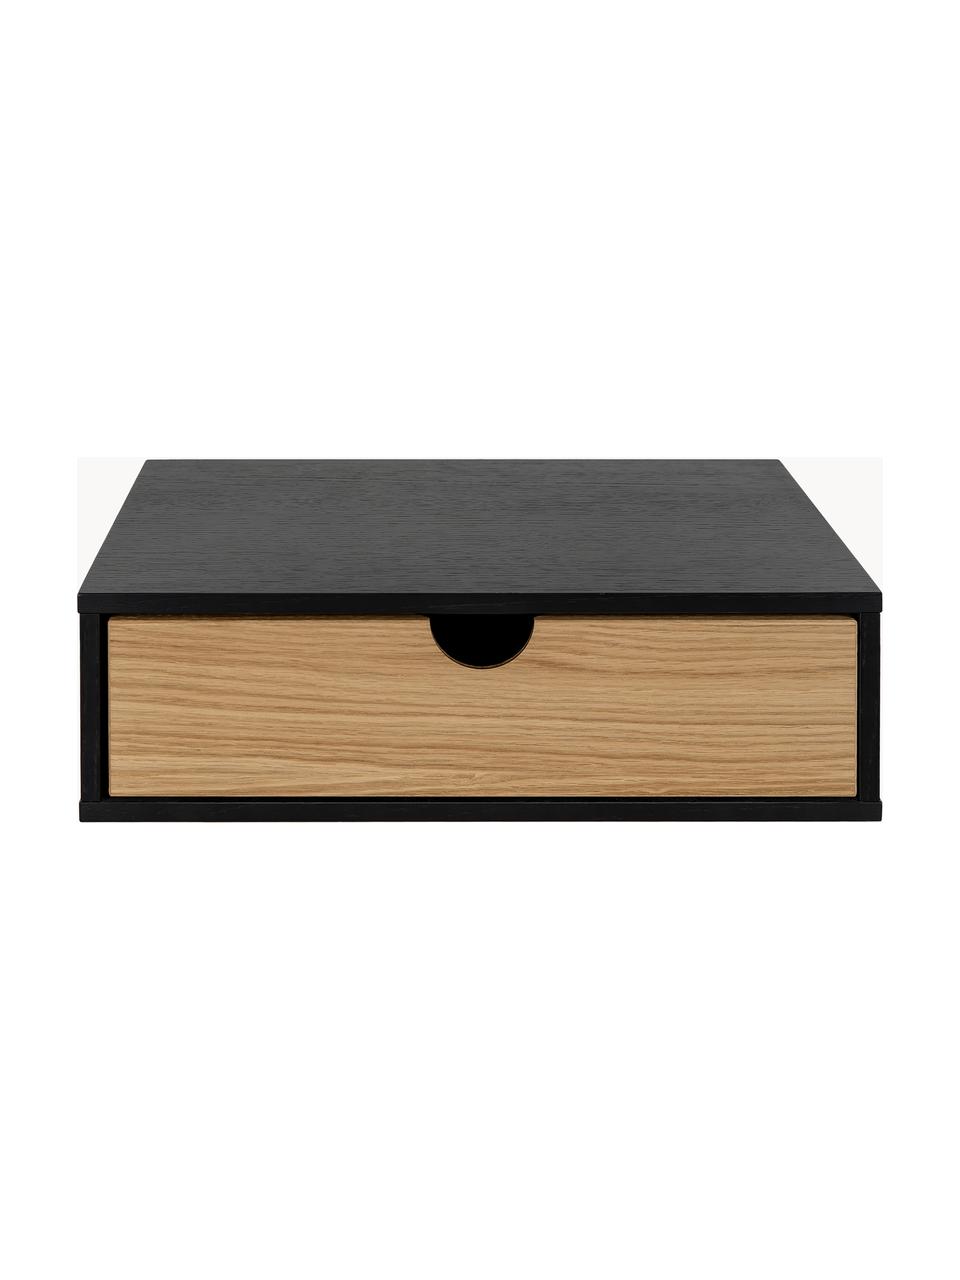 Nástenný nočný stolík Farsta, Drevovláknitá doska strednej hustoty (MDF) s dyhou z dubového dreva, Dubové drevo, čierna, Š 40 x V 15 cm